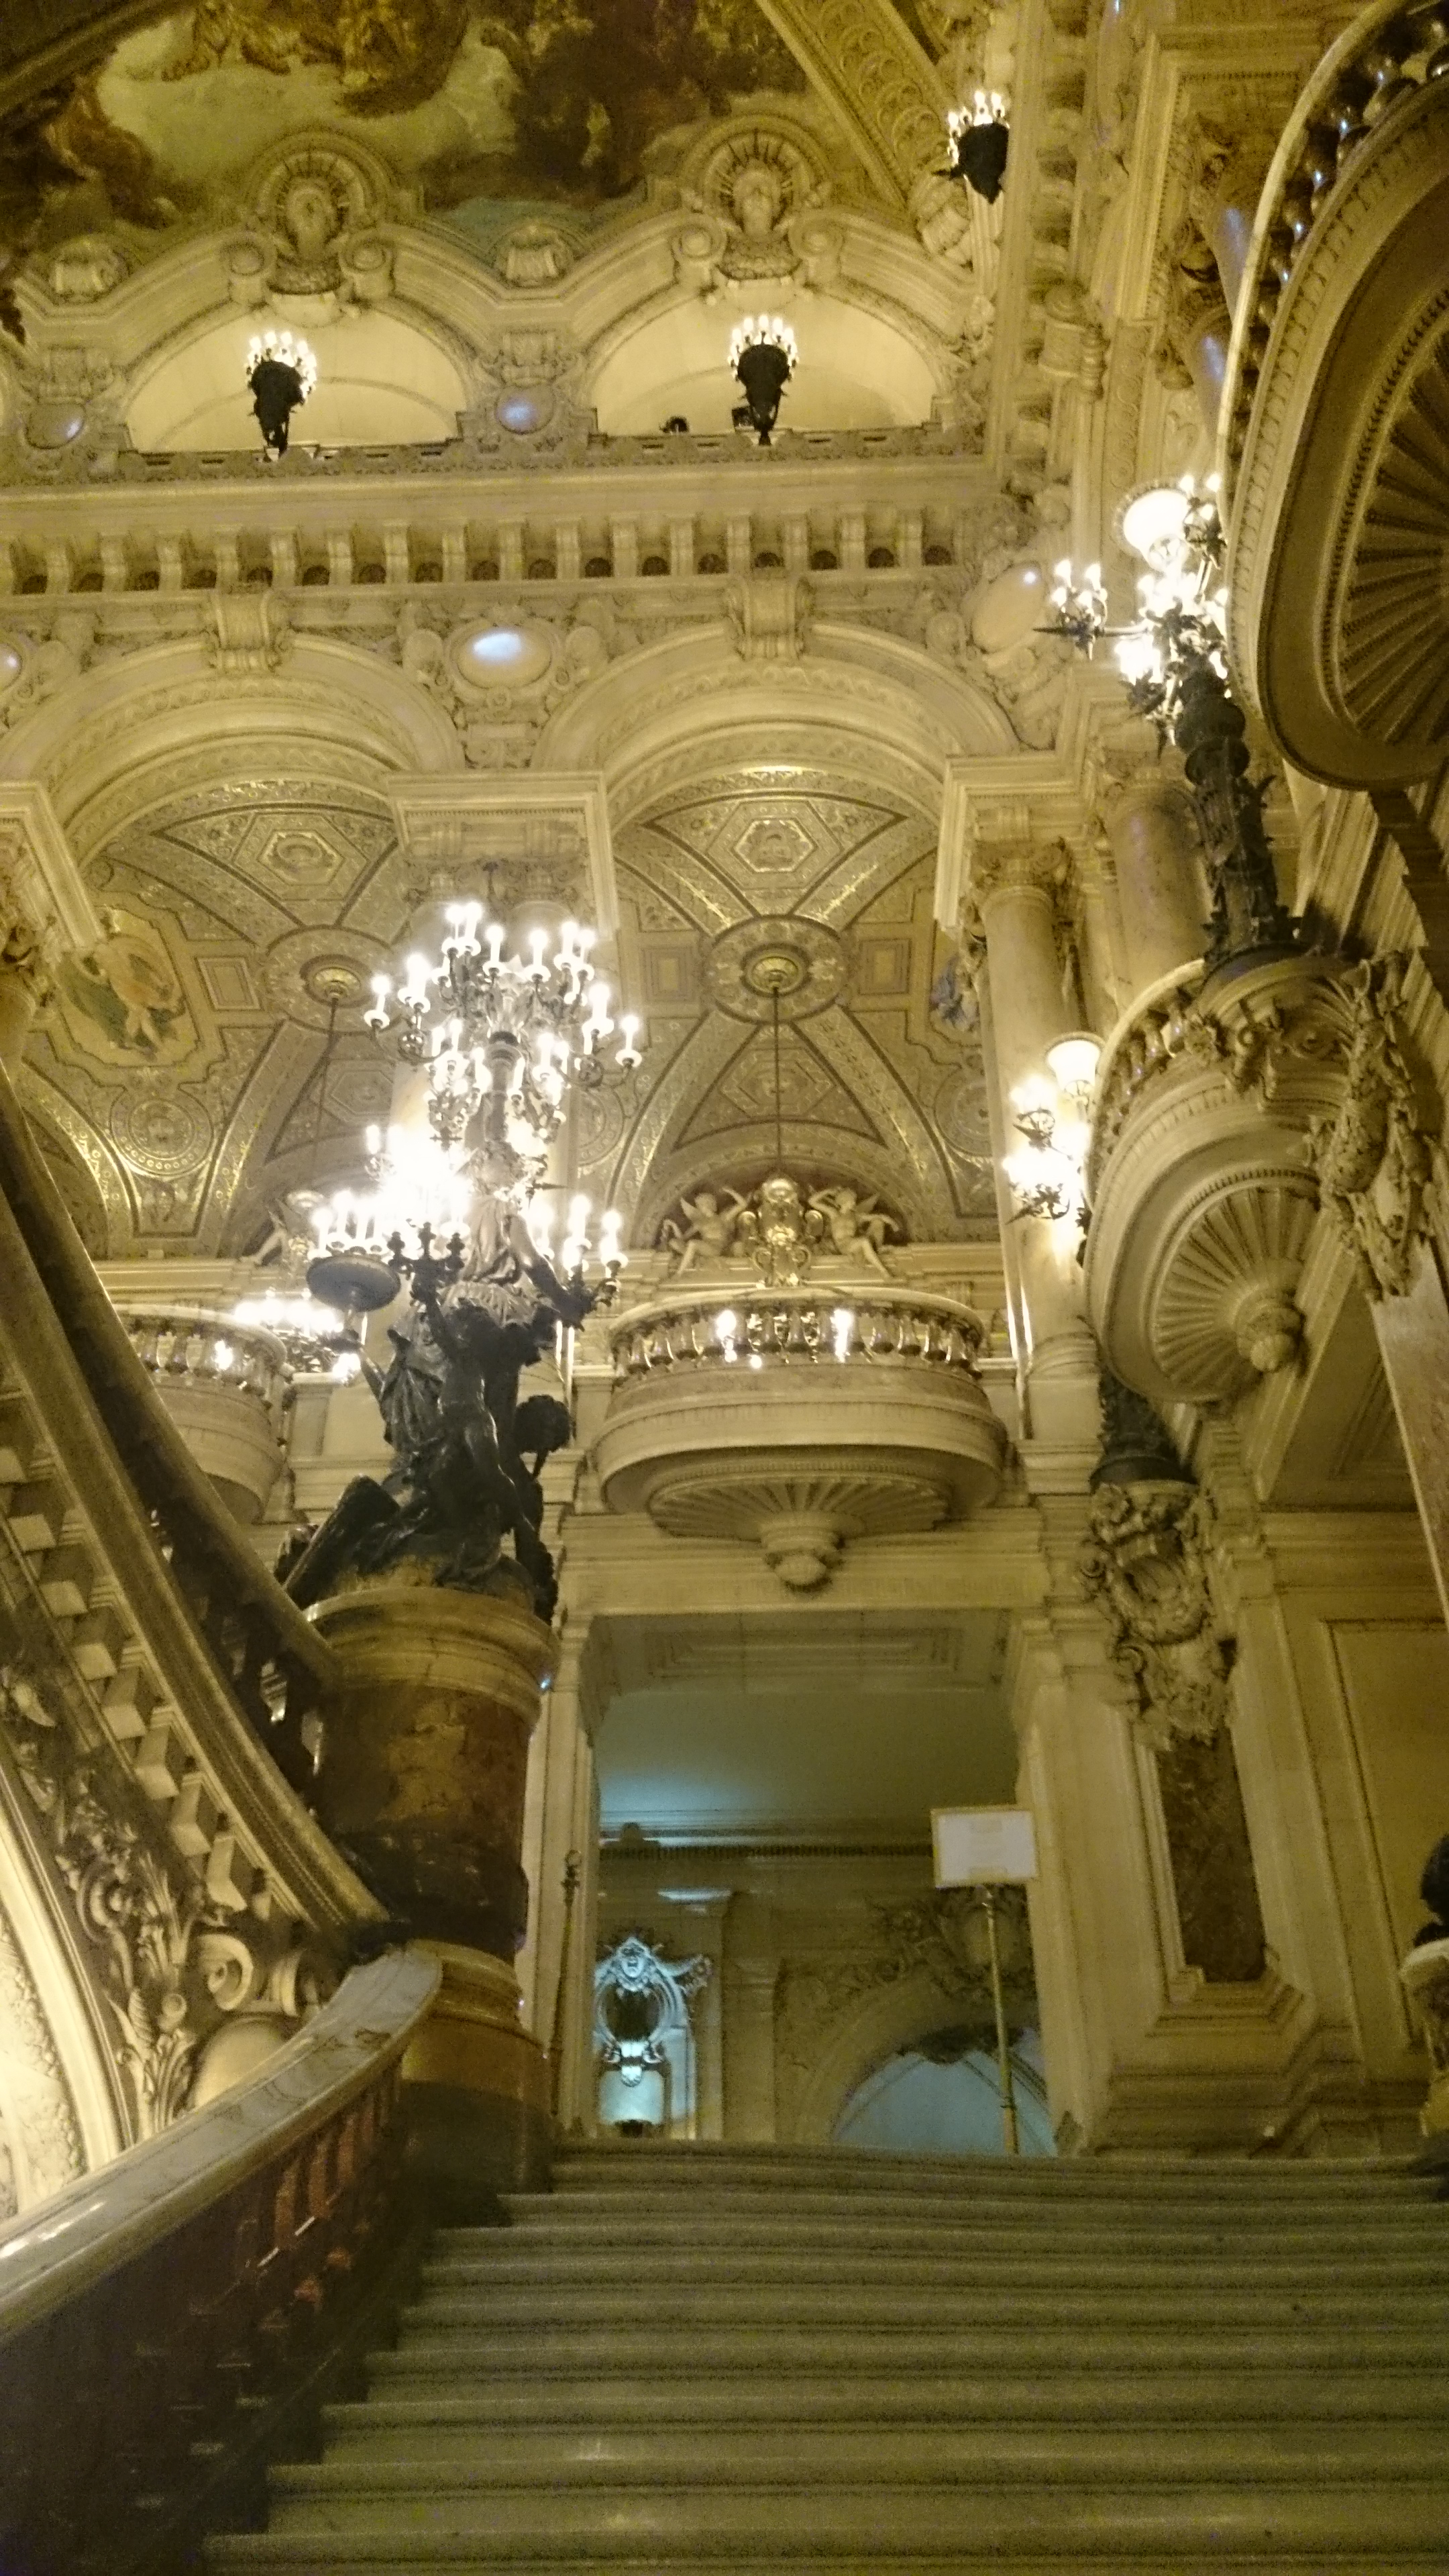 dsc 1005 - Una visita a la Opera de Paris (Palais Garnier)